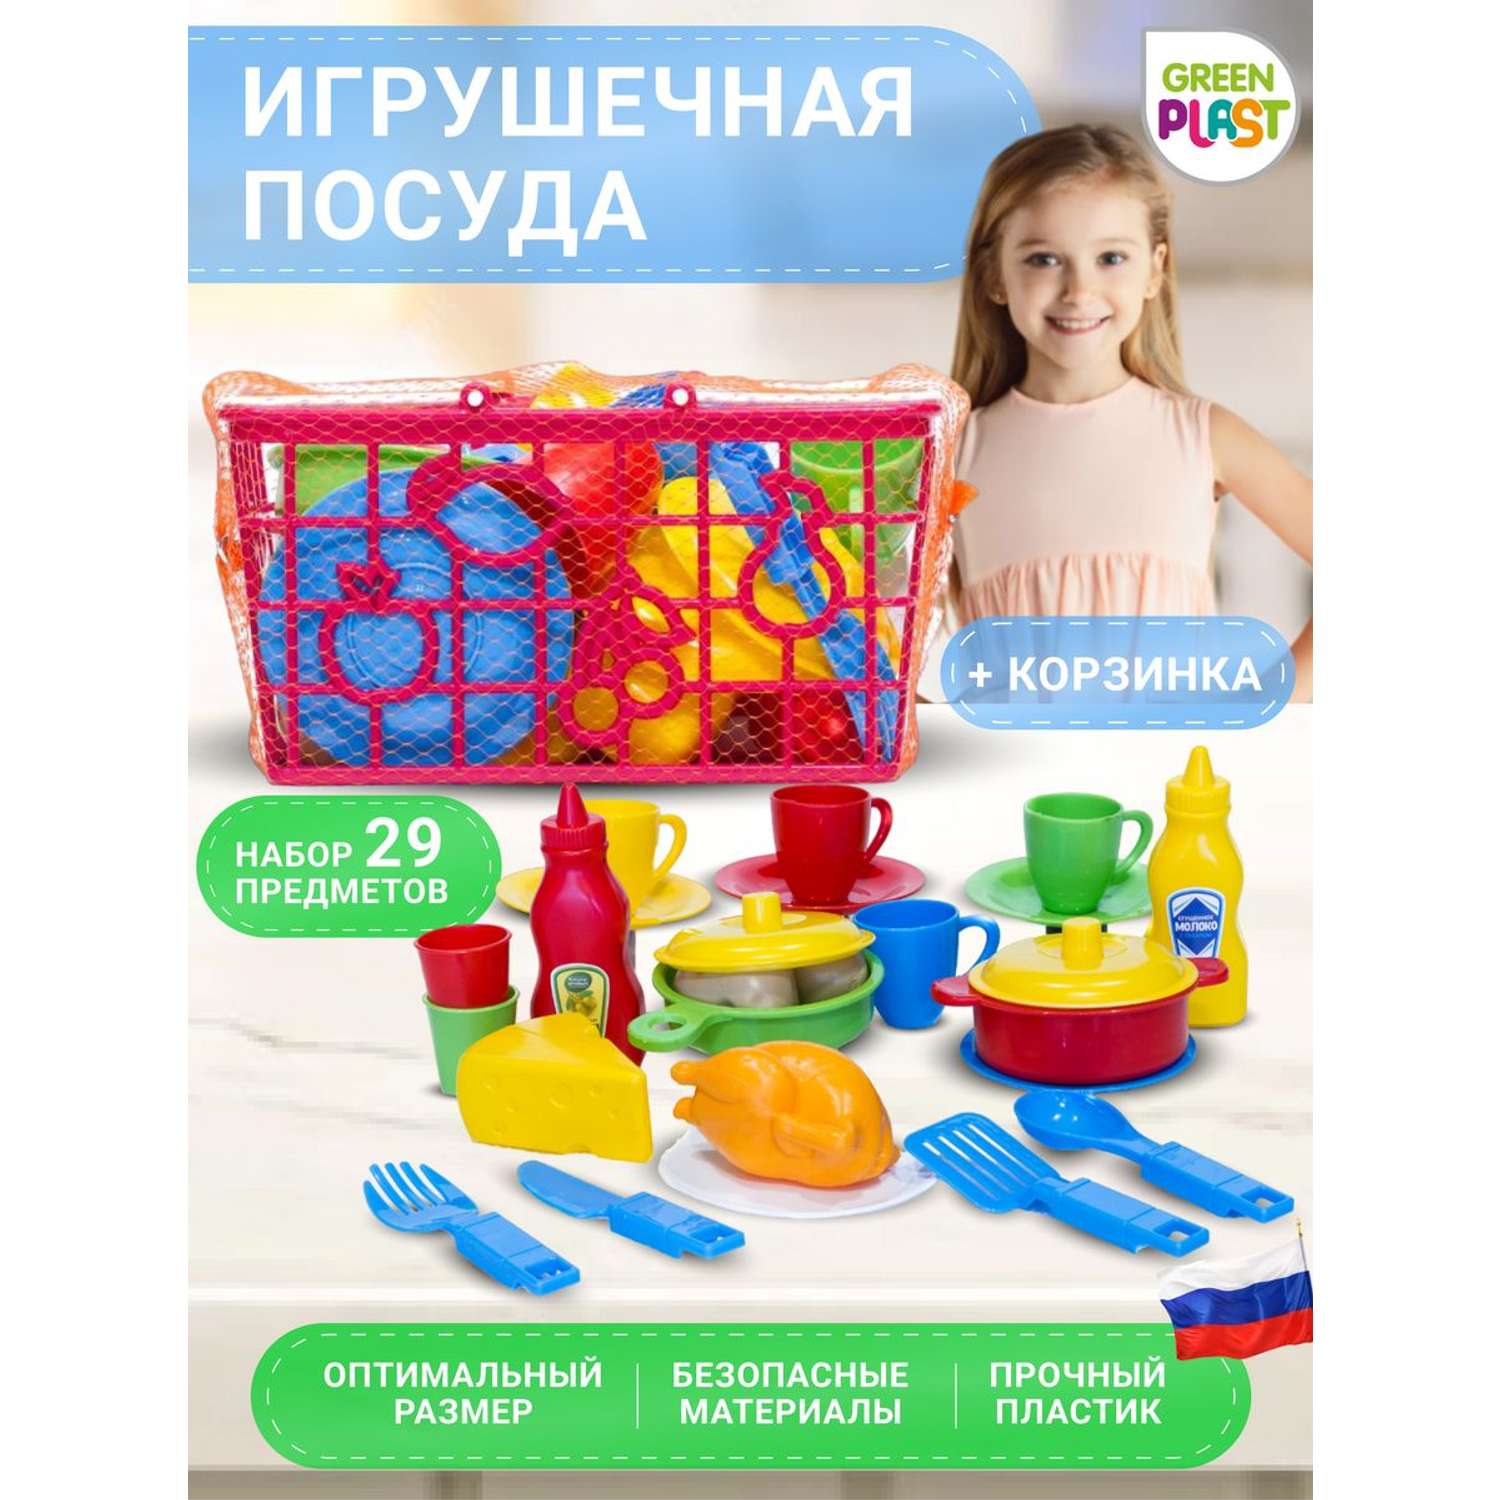 Детская игрушечная посуда Green Plast с продуктами для кухни в корзинке - фото 1